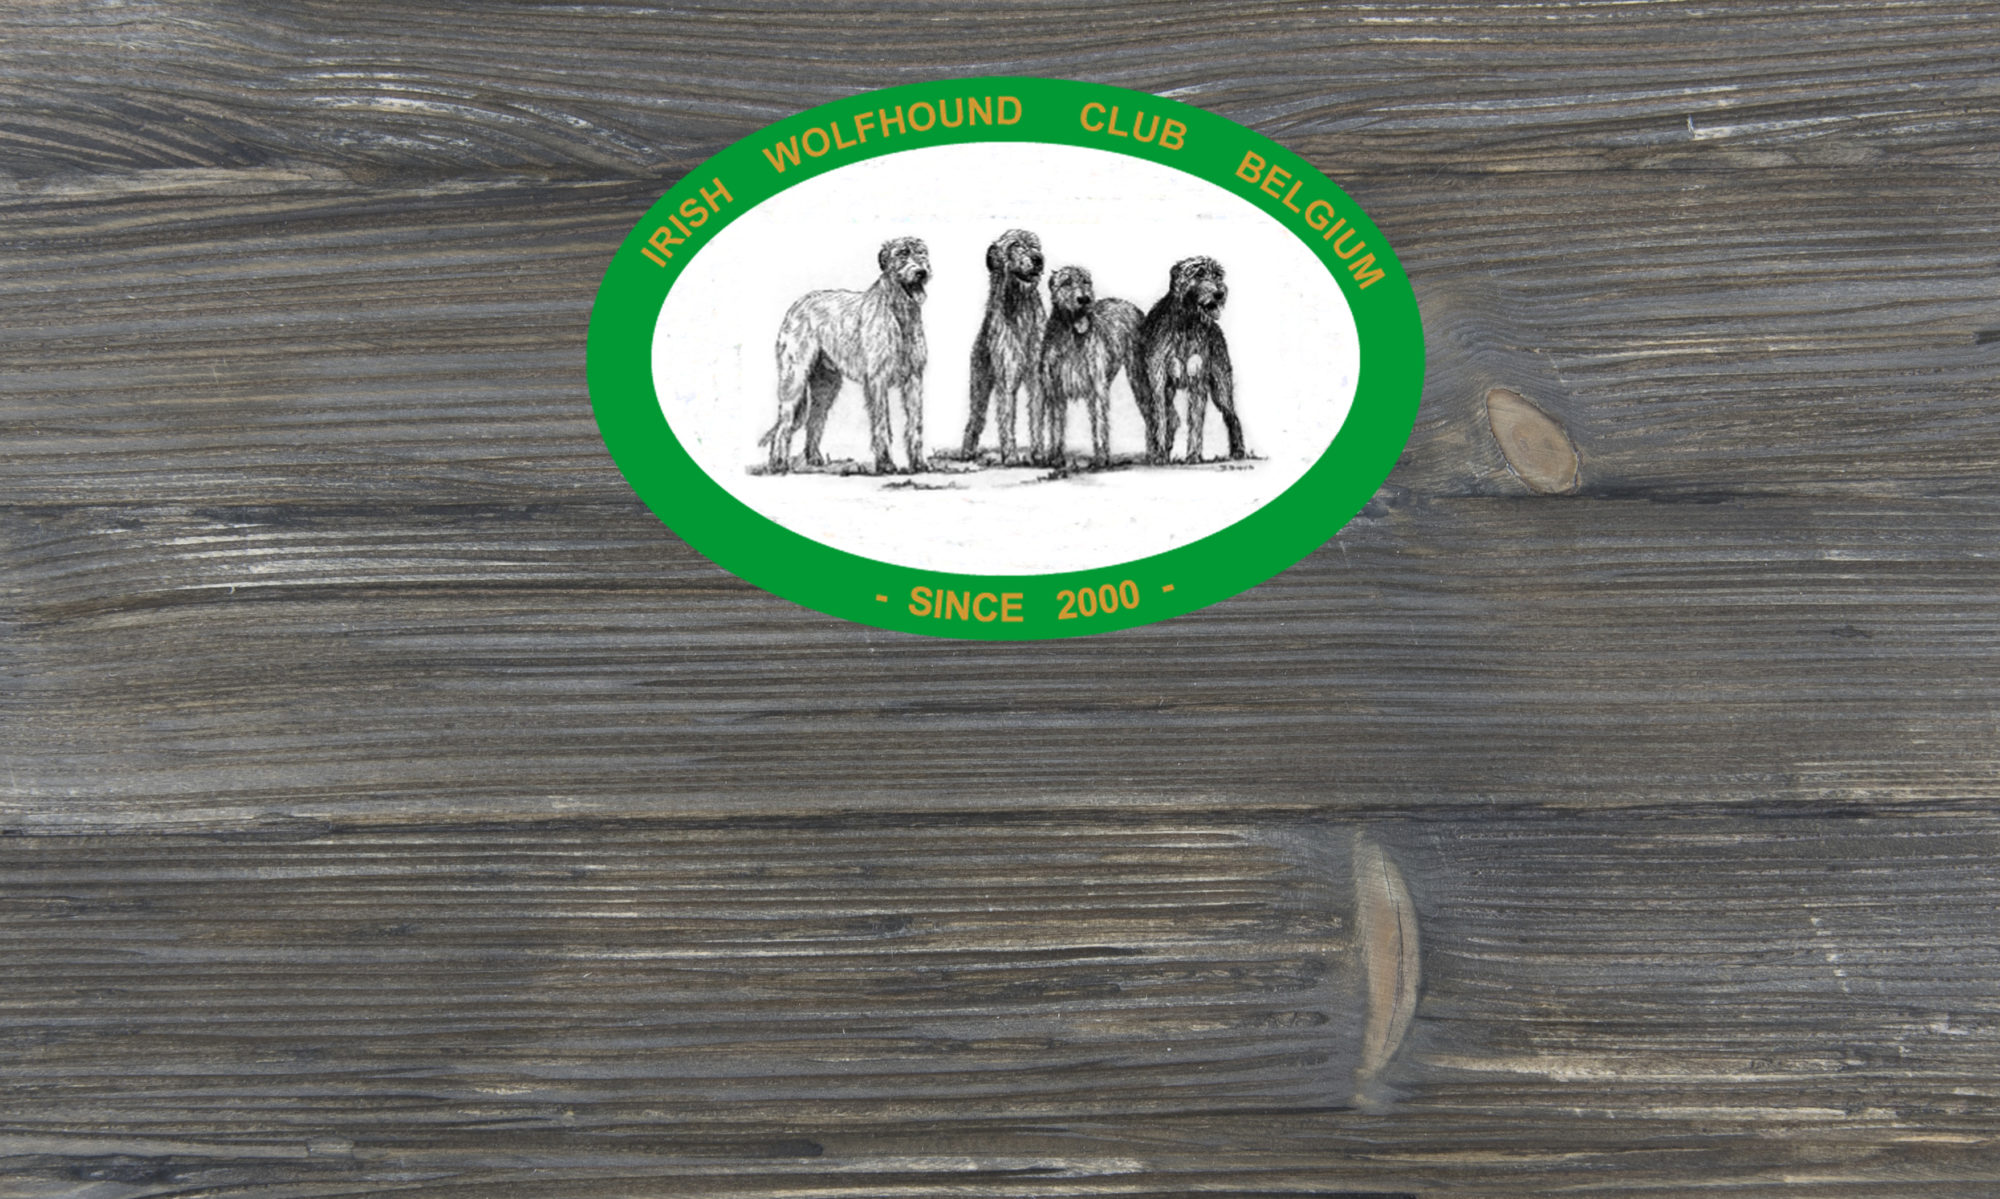 Irish Wolfhound Club Belgium